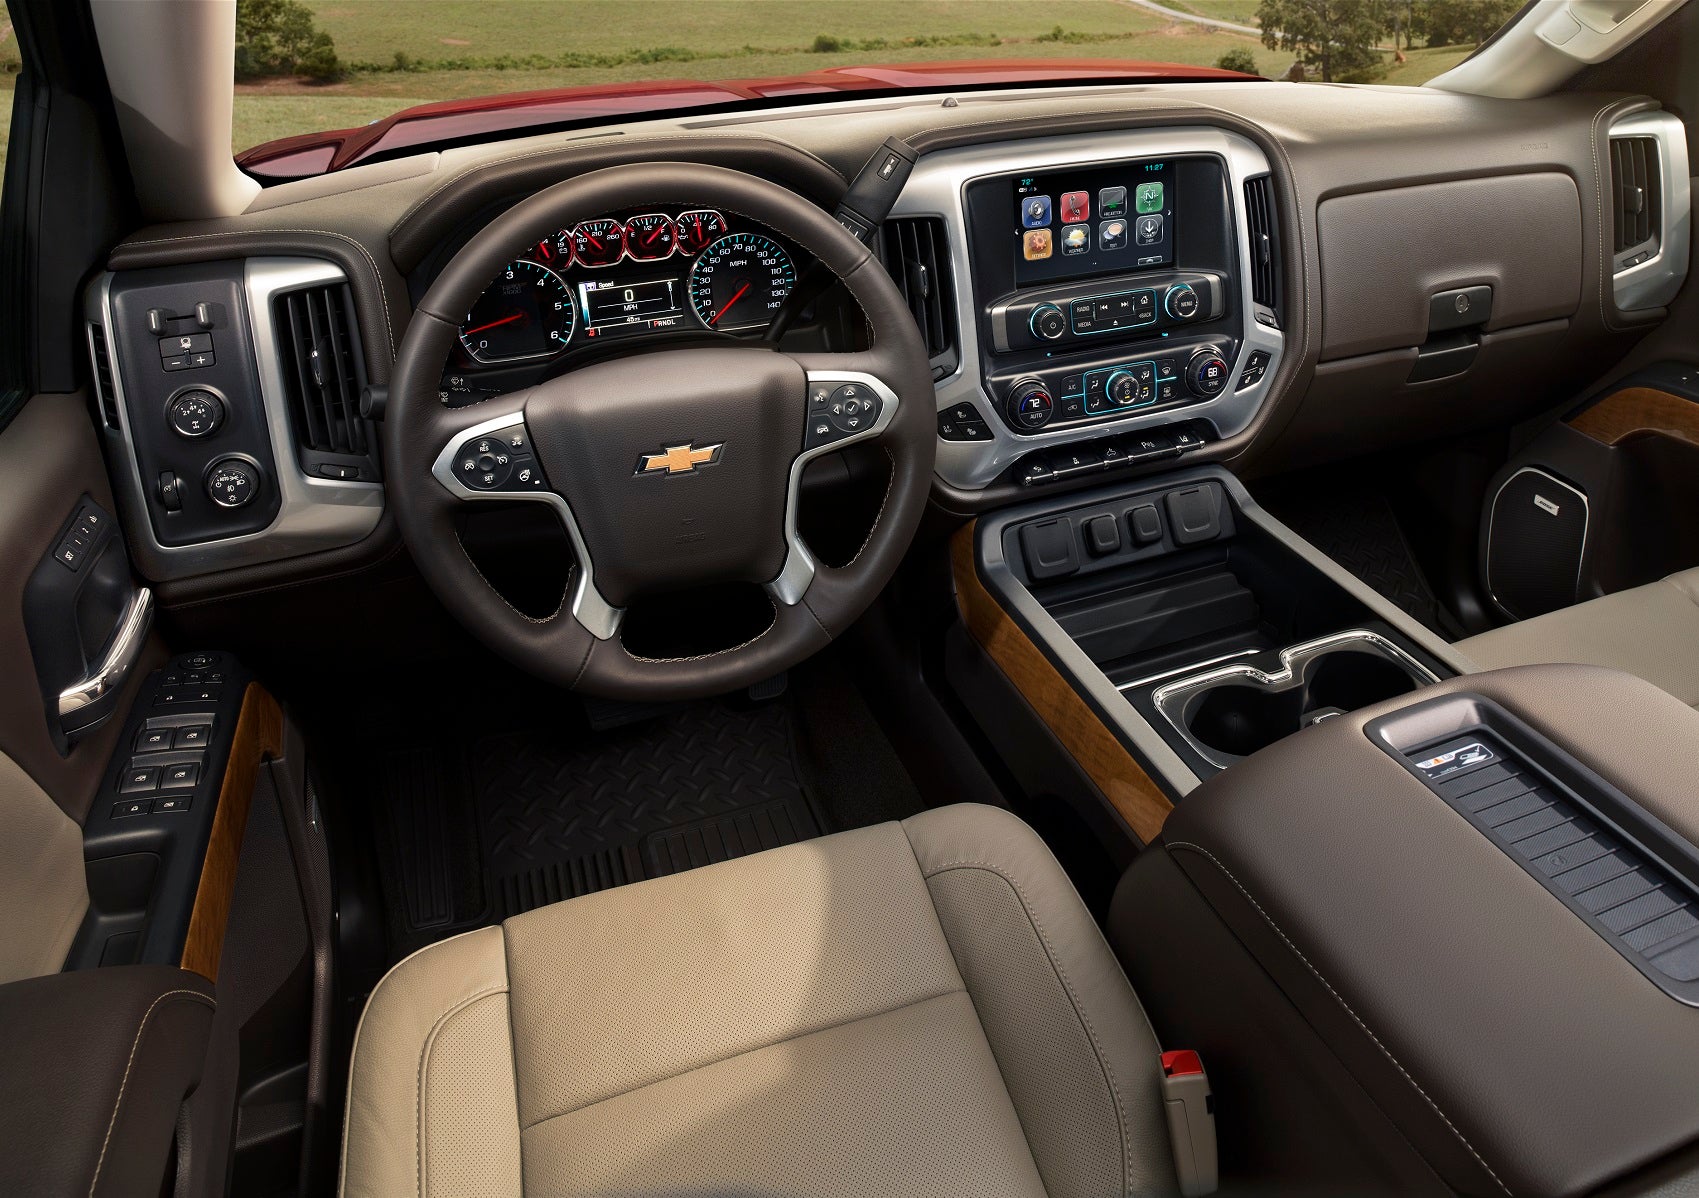 Chevy Silverado 2500 Interior Features New Hudson MI